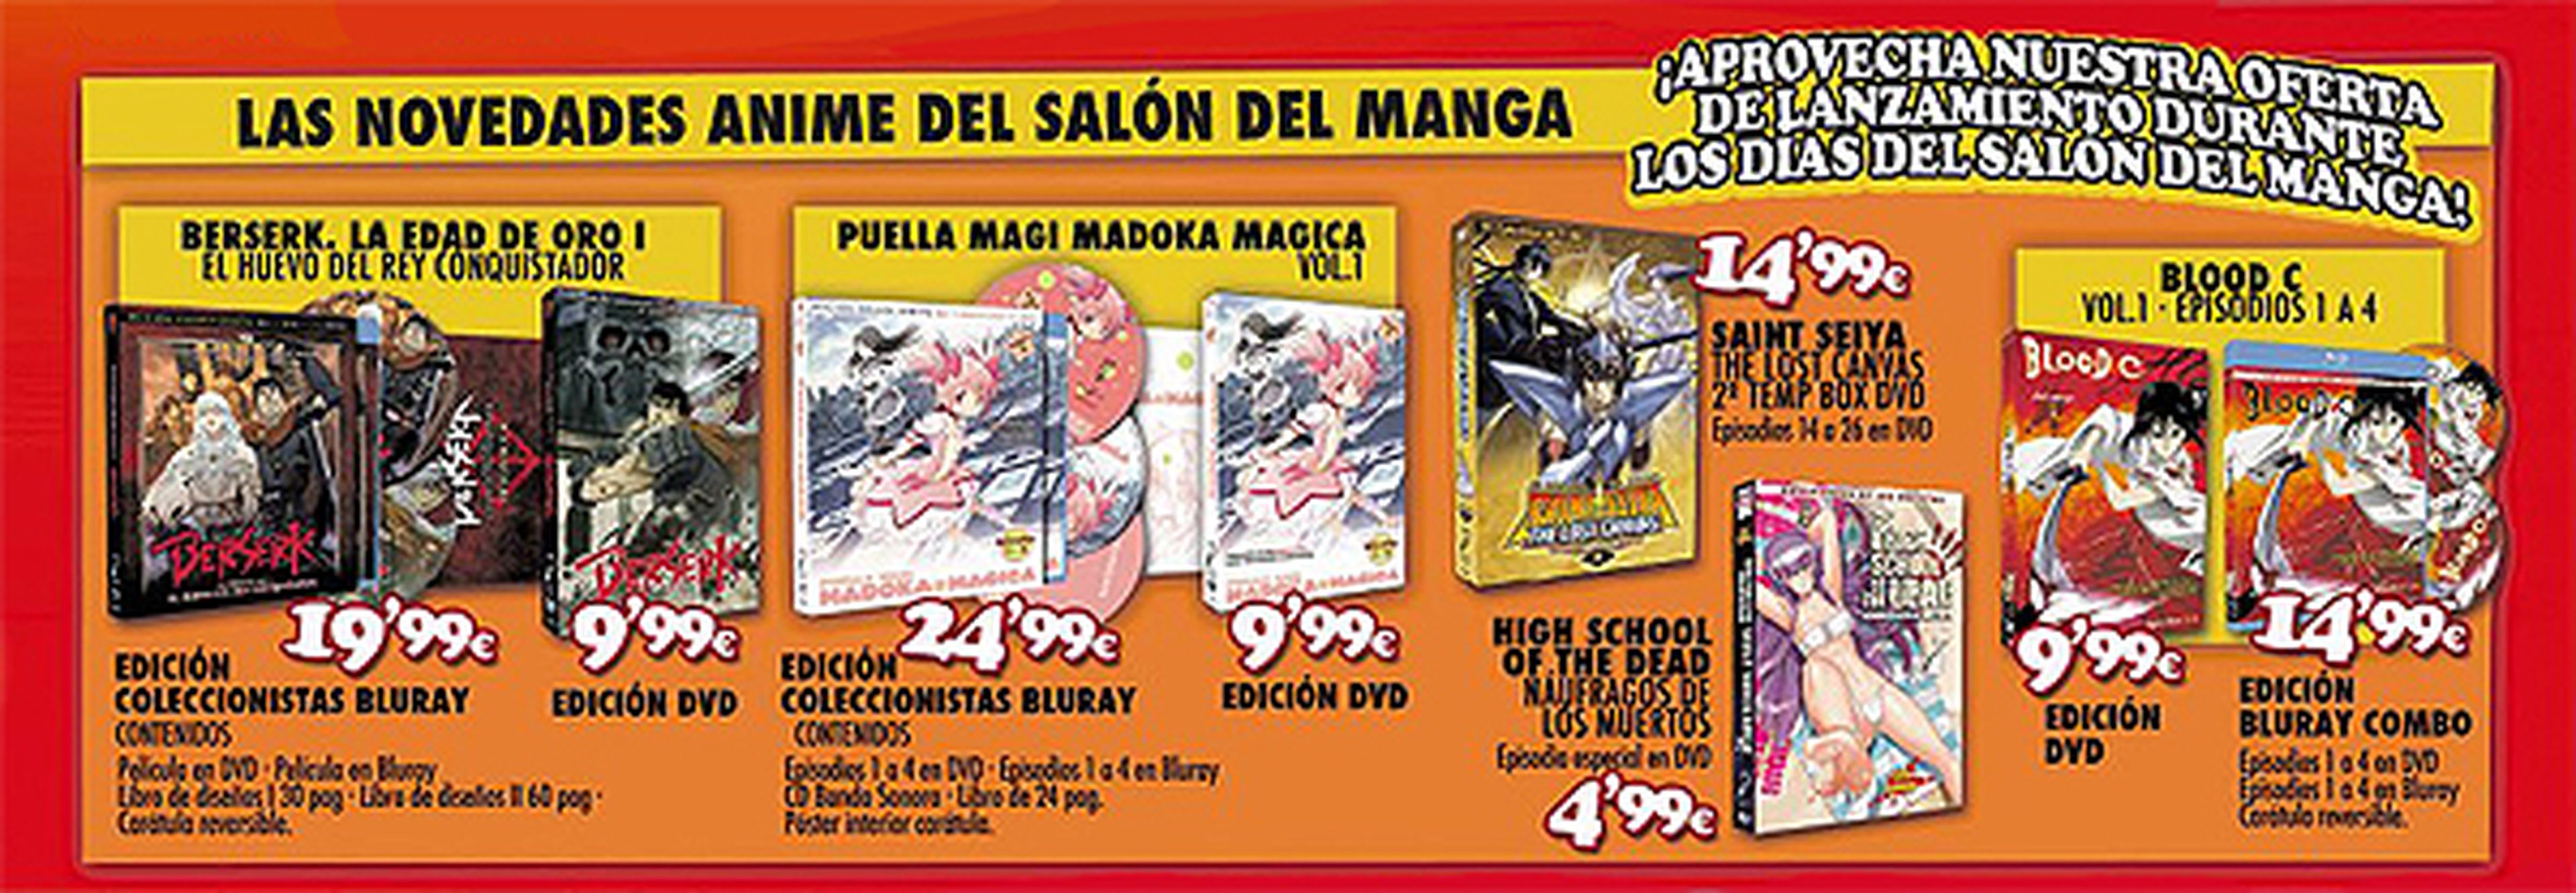 FICOMIC: ofertas de Selecta Visión en el Salón del Manga